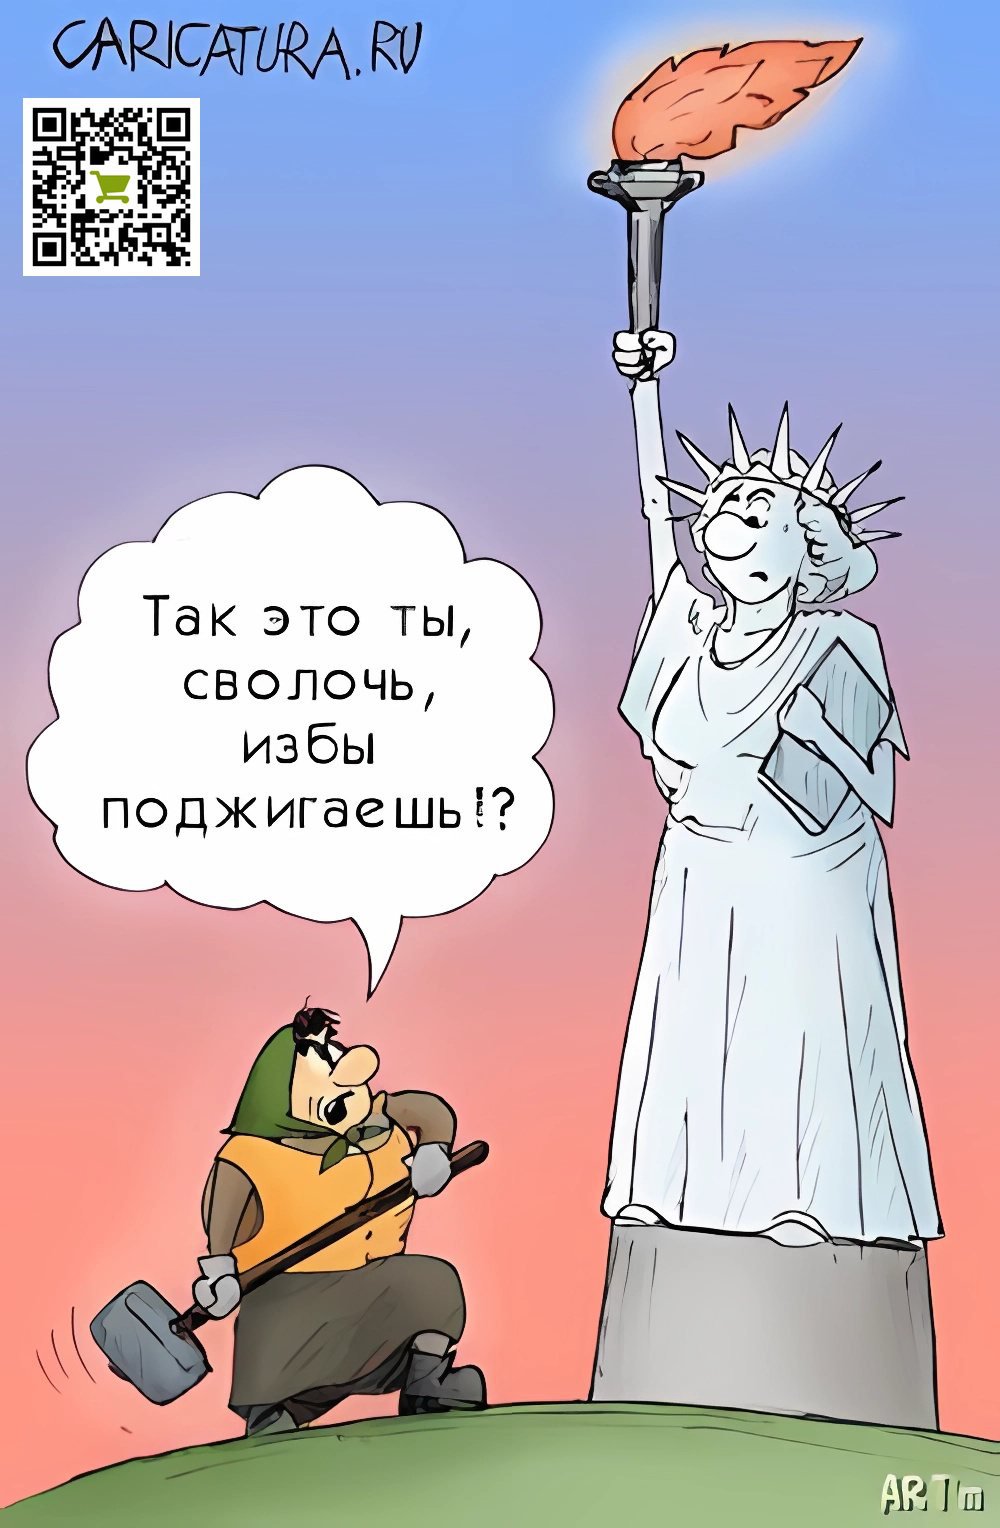 Карикатура "Есть женщины...", Артем Попов